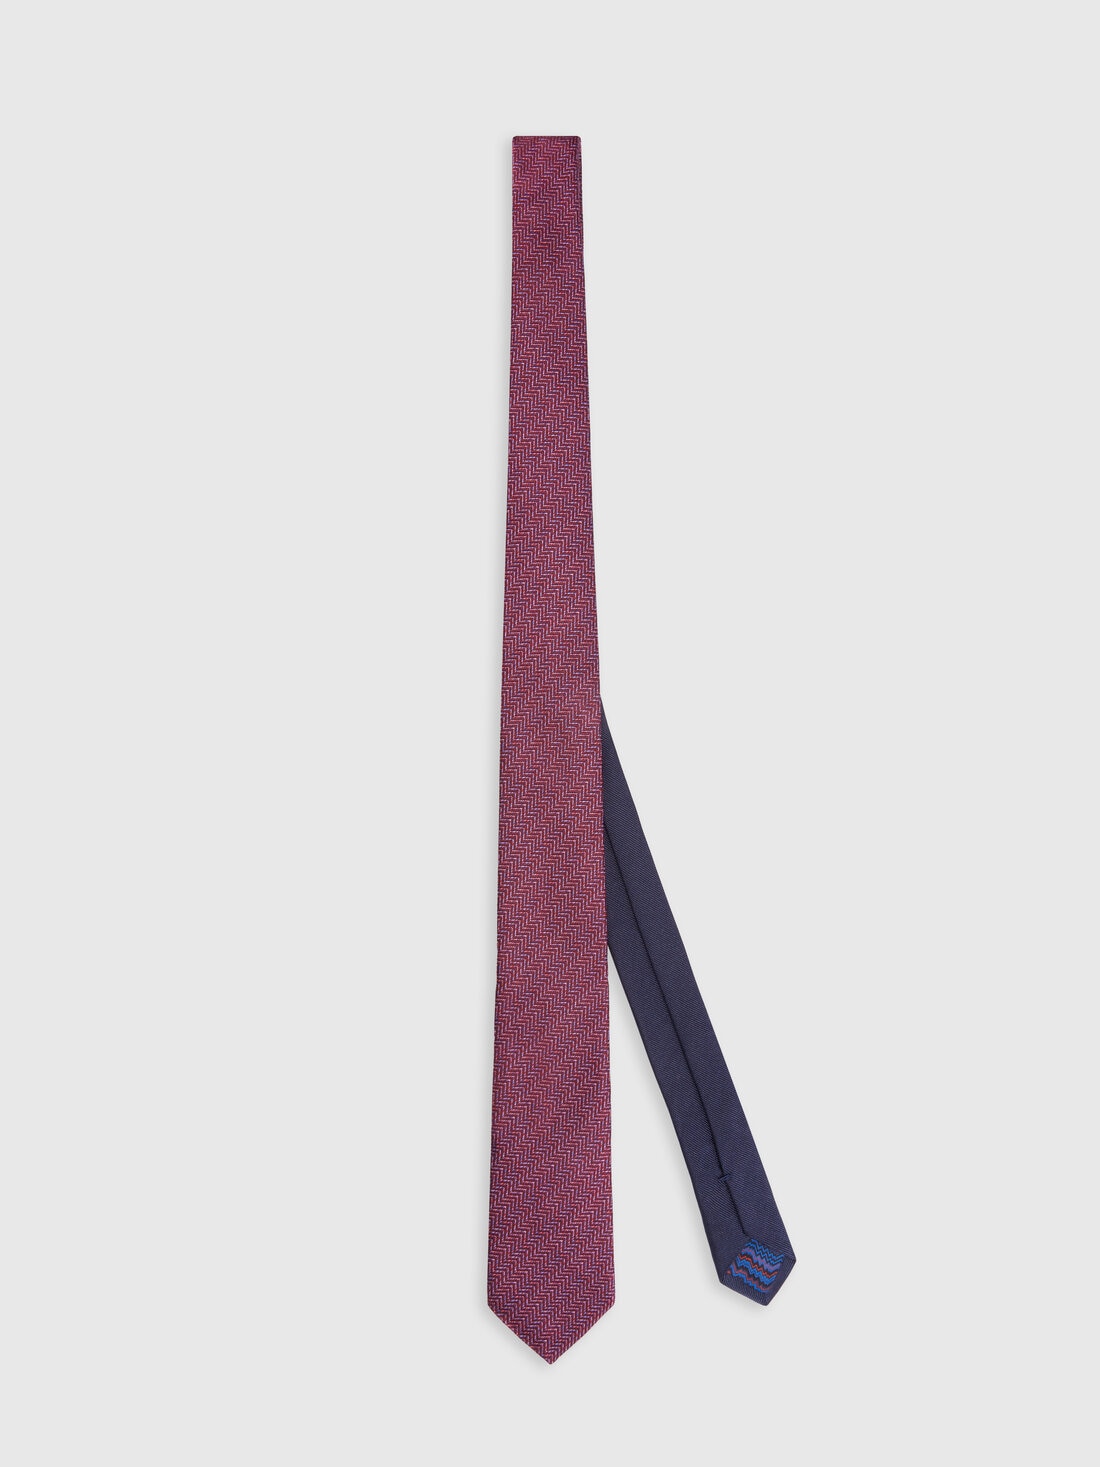 Silk chevron tie, Multicoloured  - 8053147141947 - 0